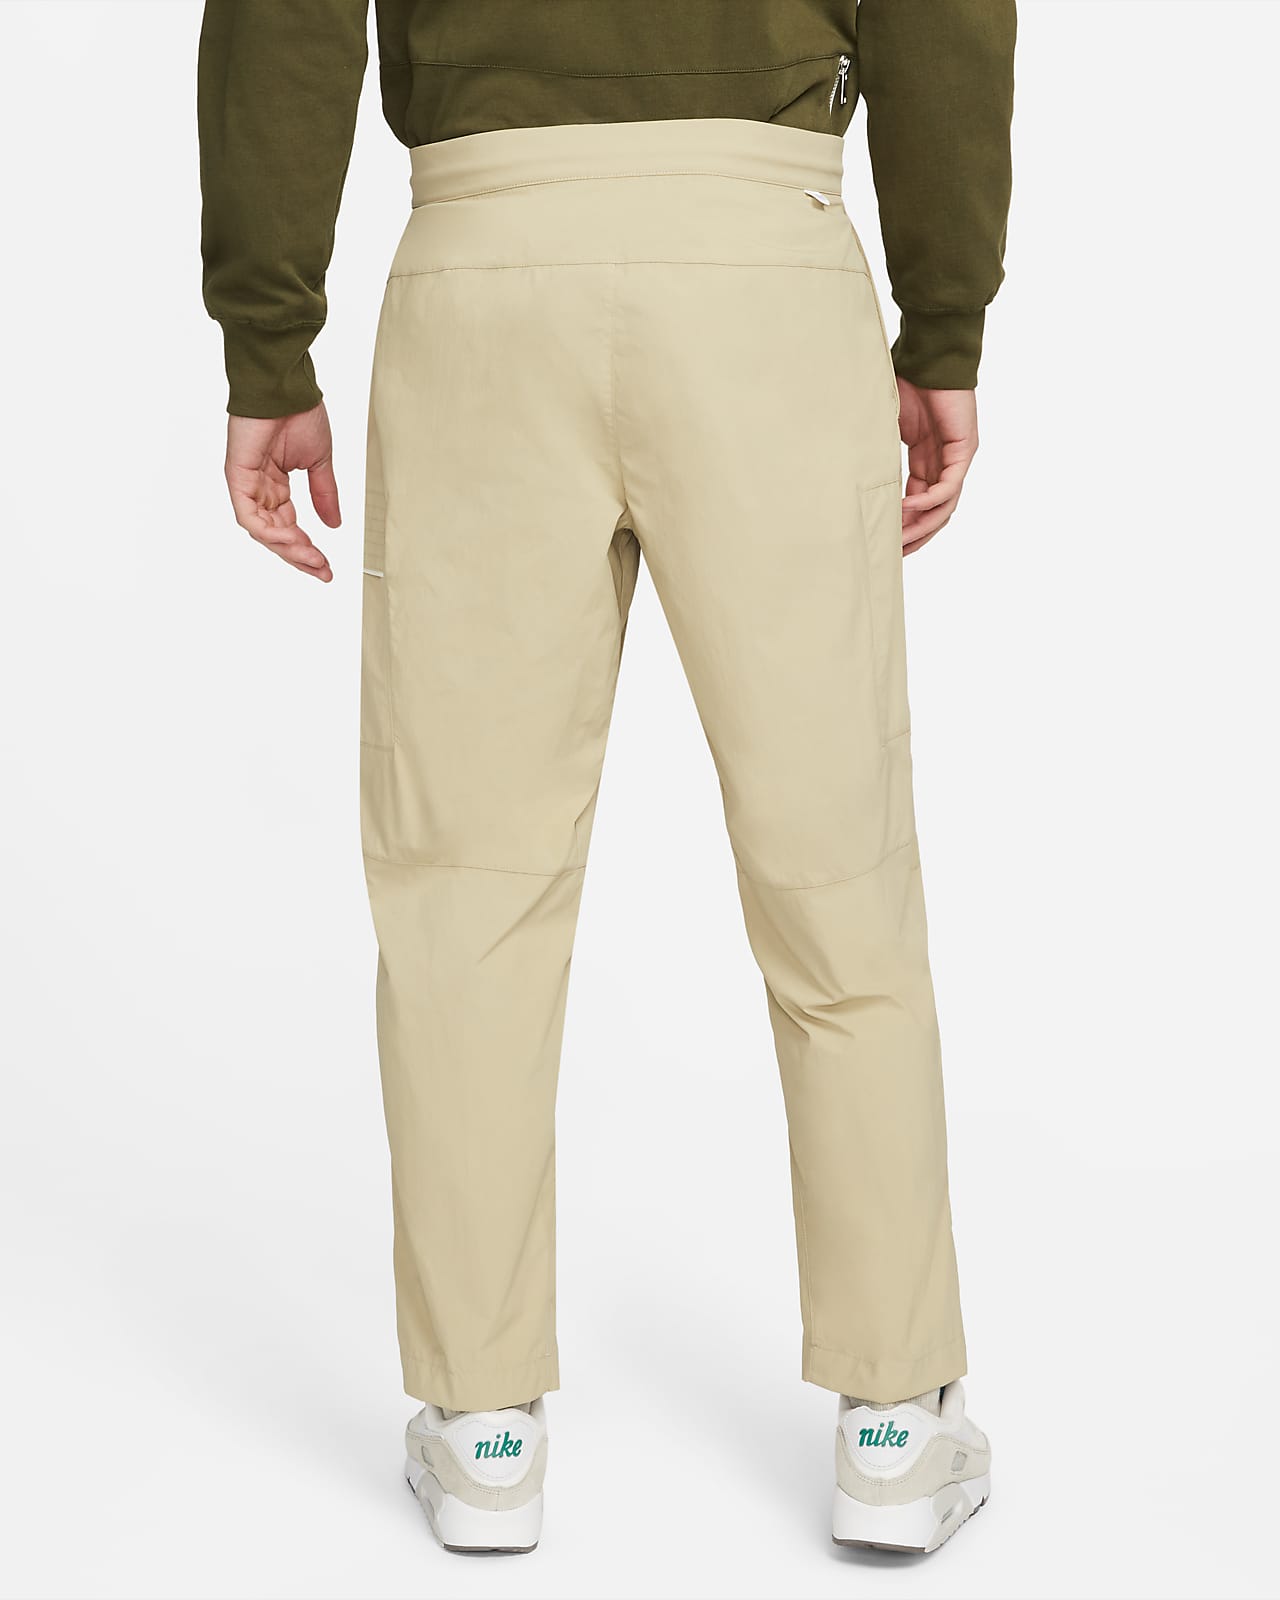 Sportswear Essentials Style Pants. Nike Utility Men\'s